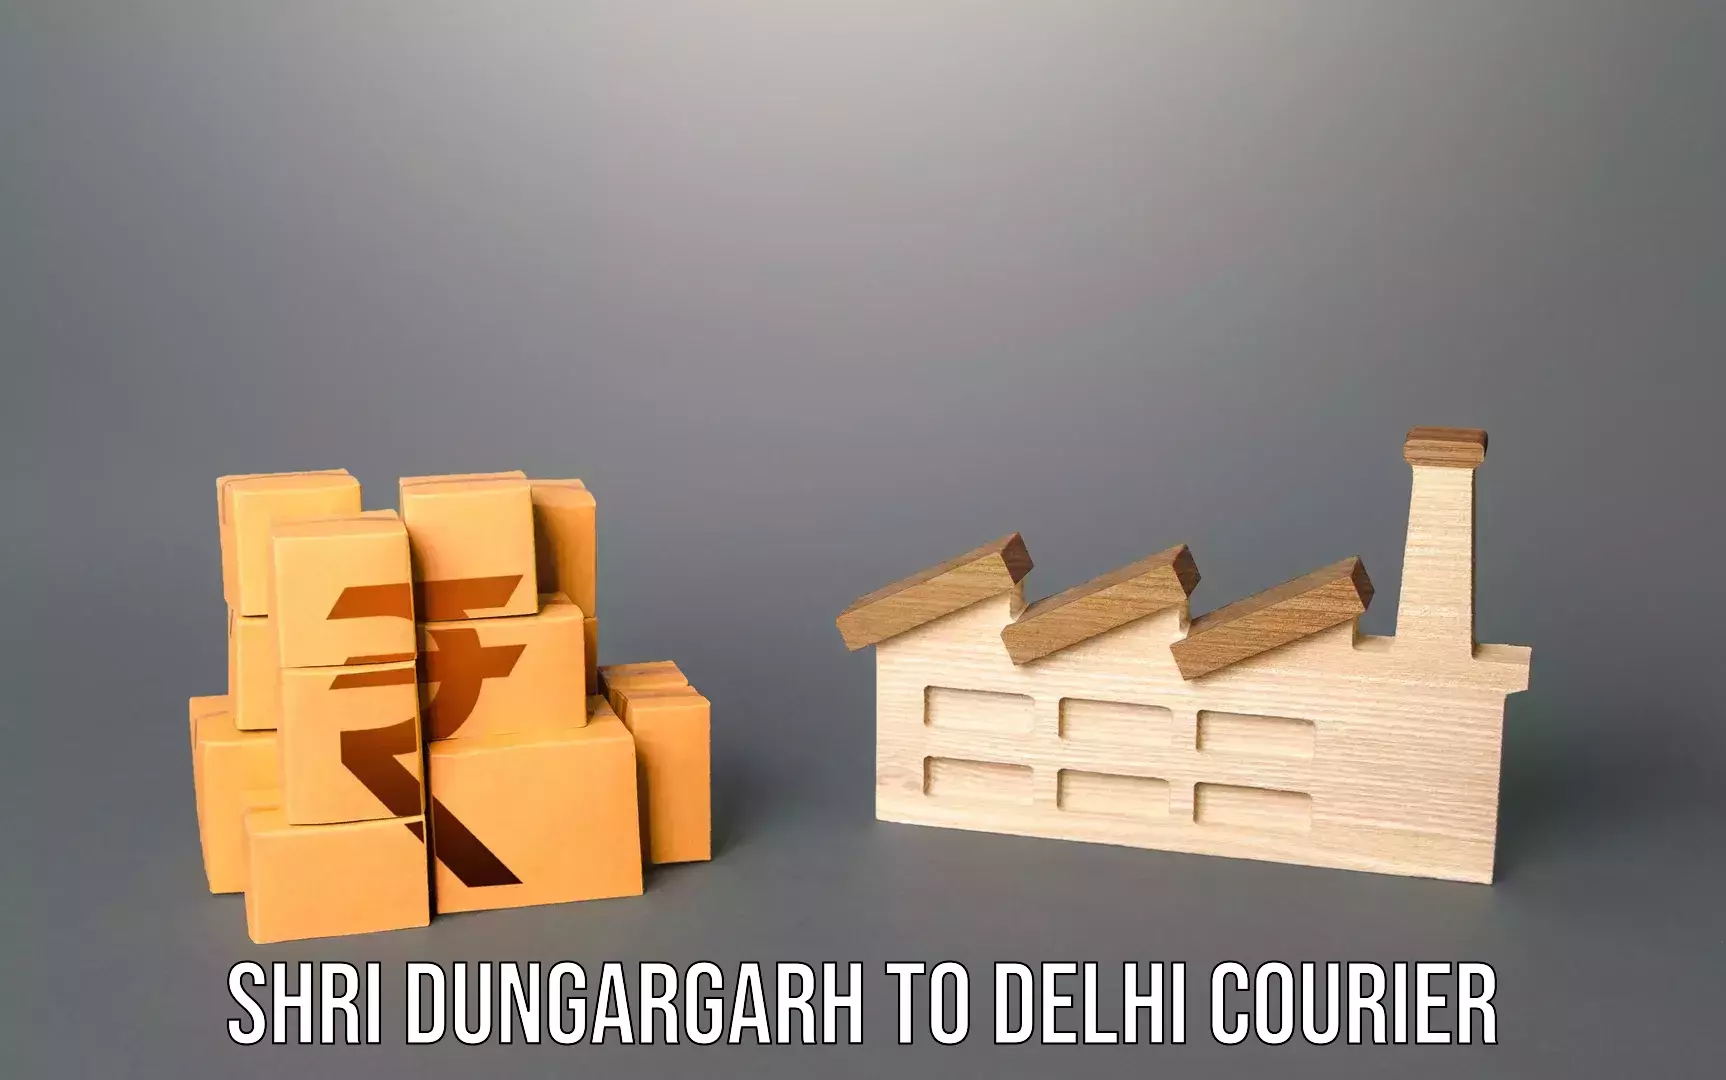 Door-to-door baggage service Shri Dungargarh to University of Delhi